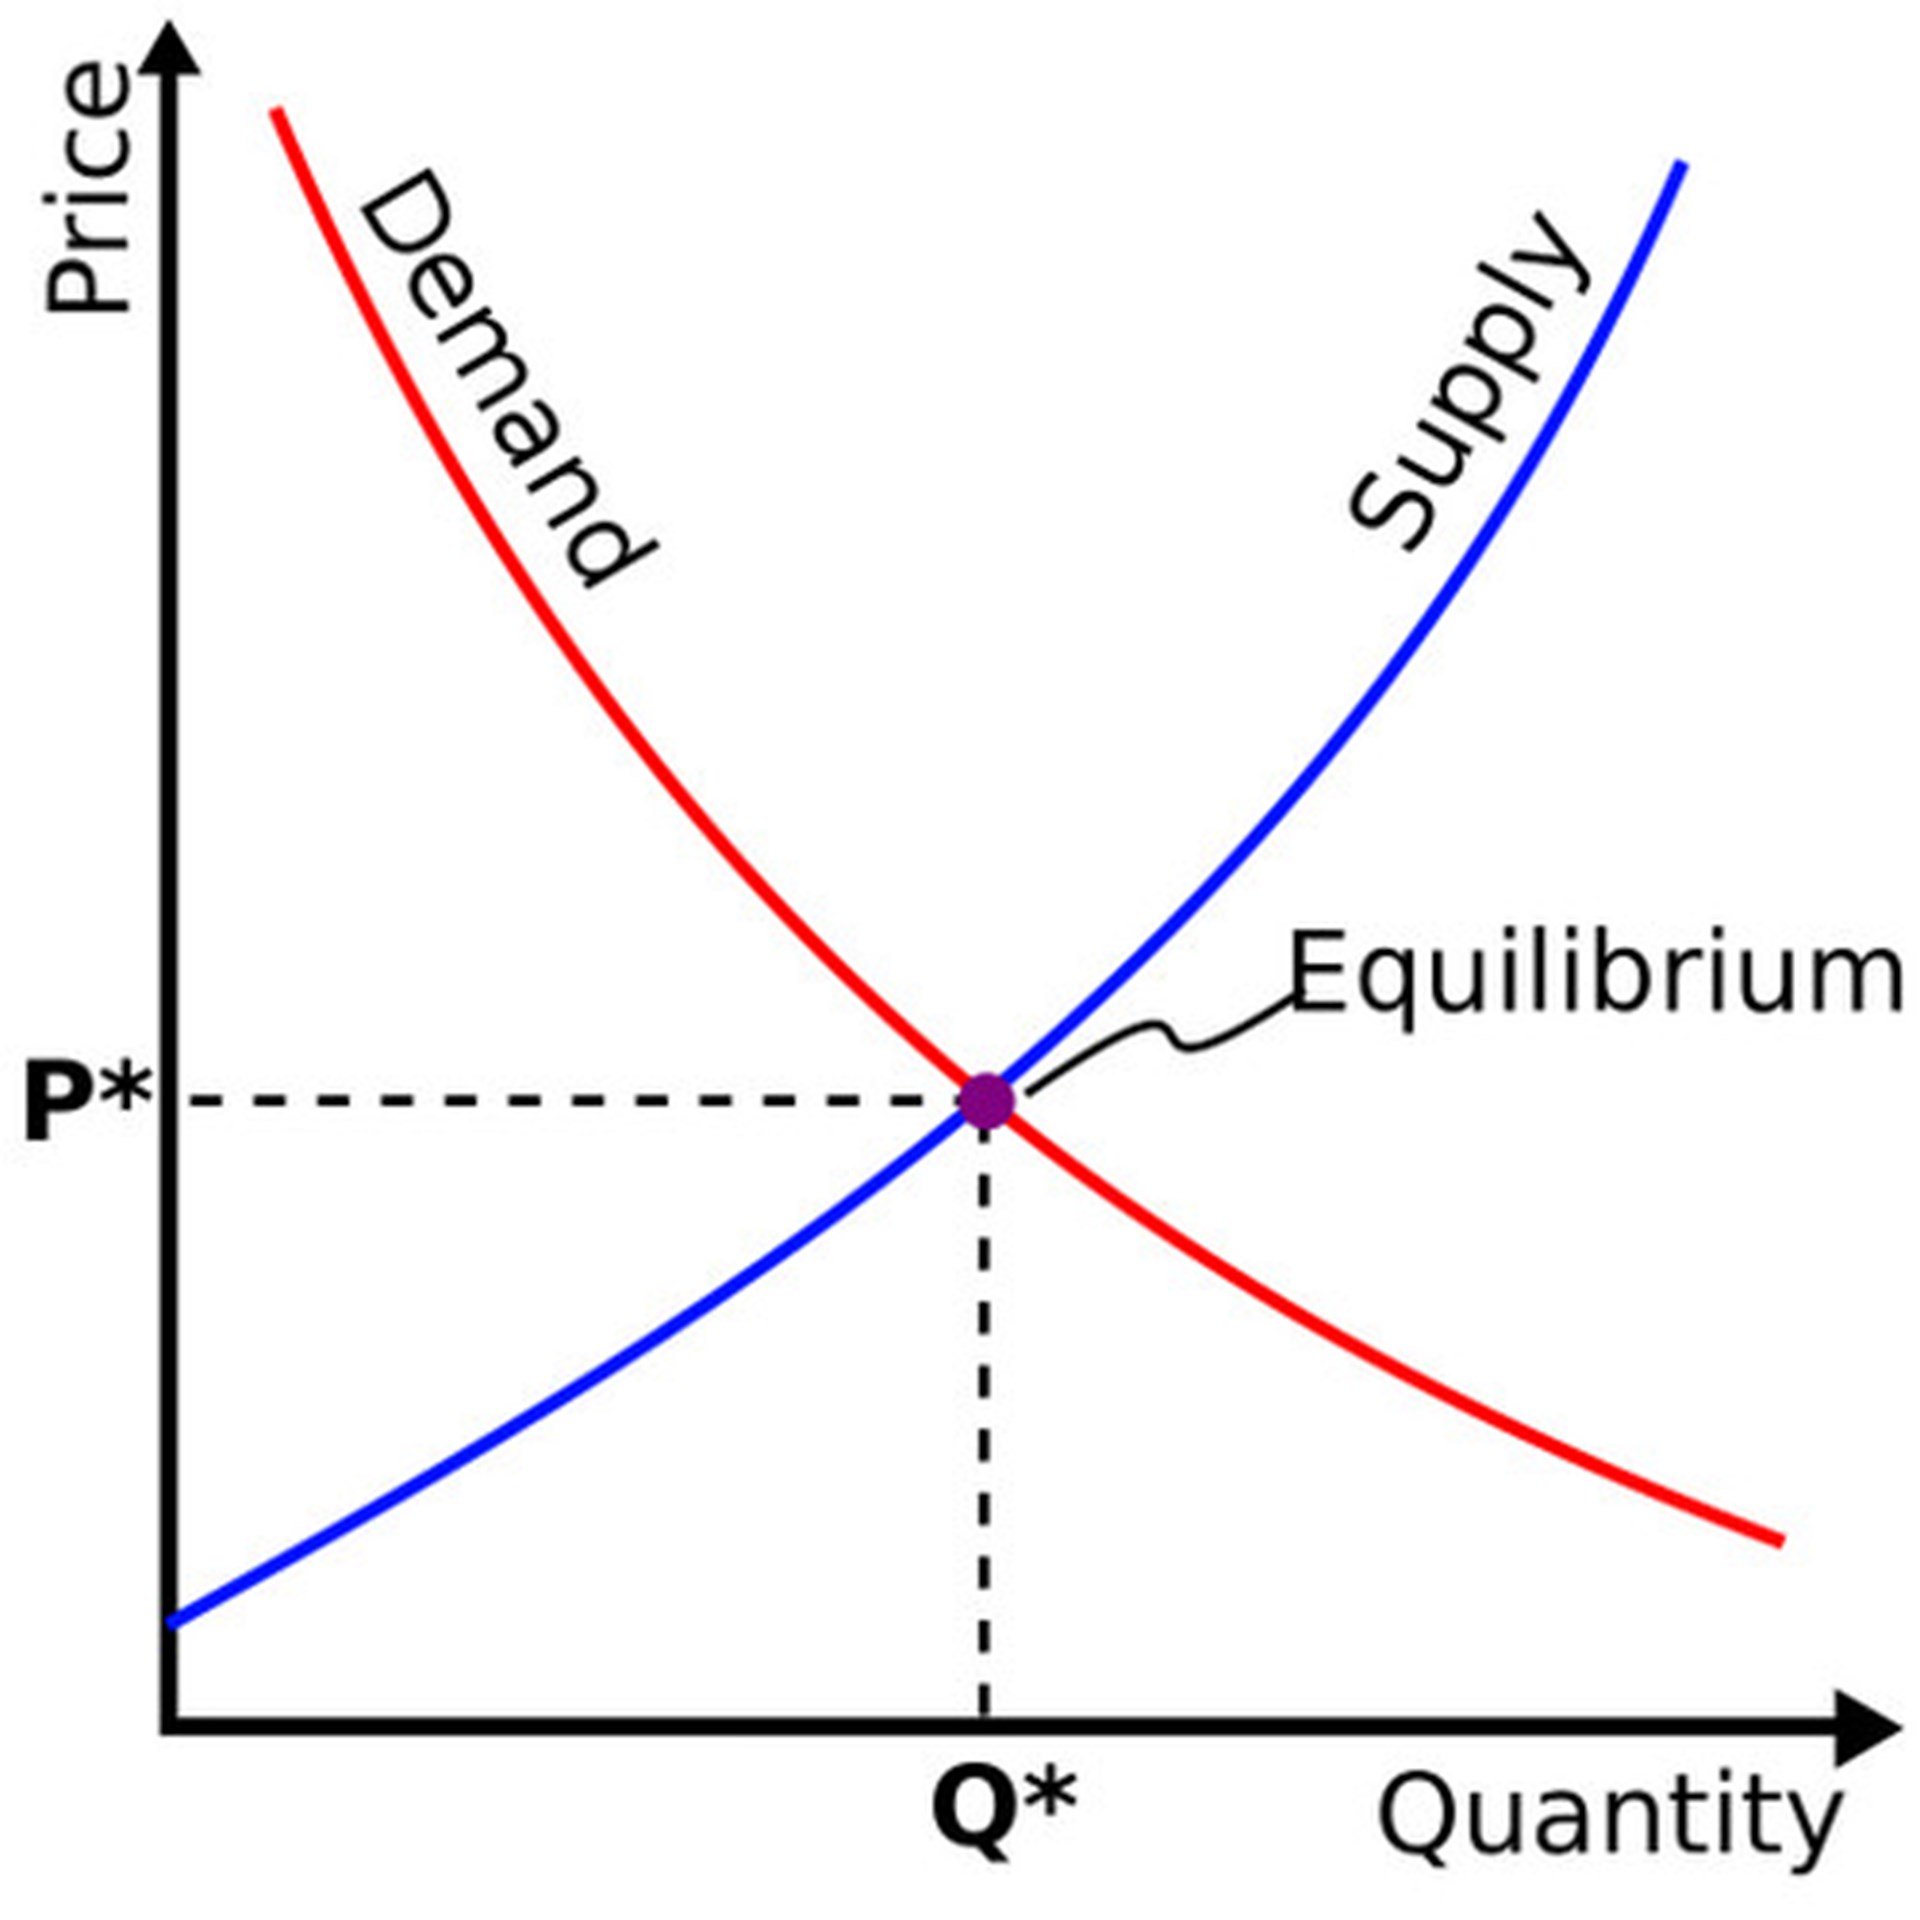 Supply demand equilibrium